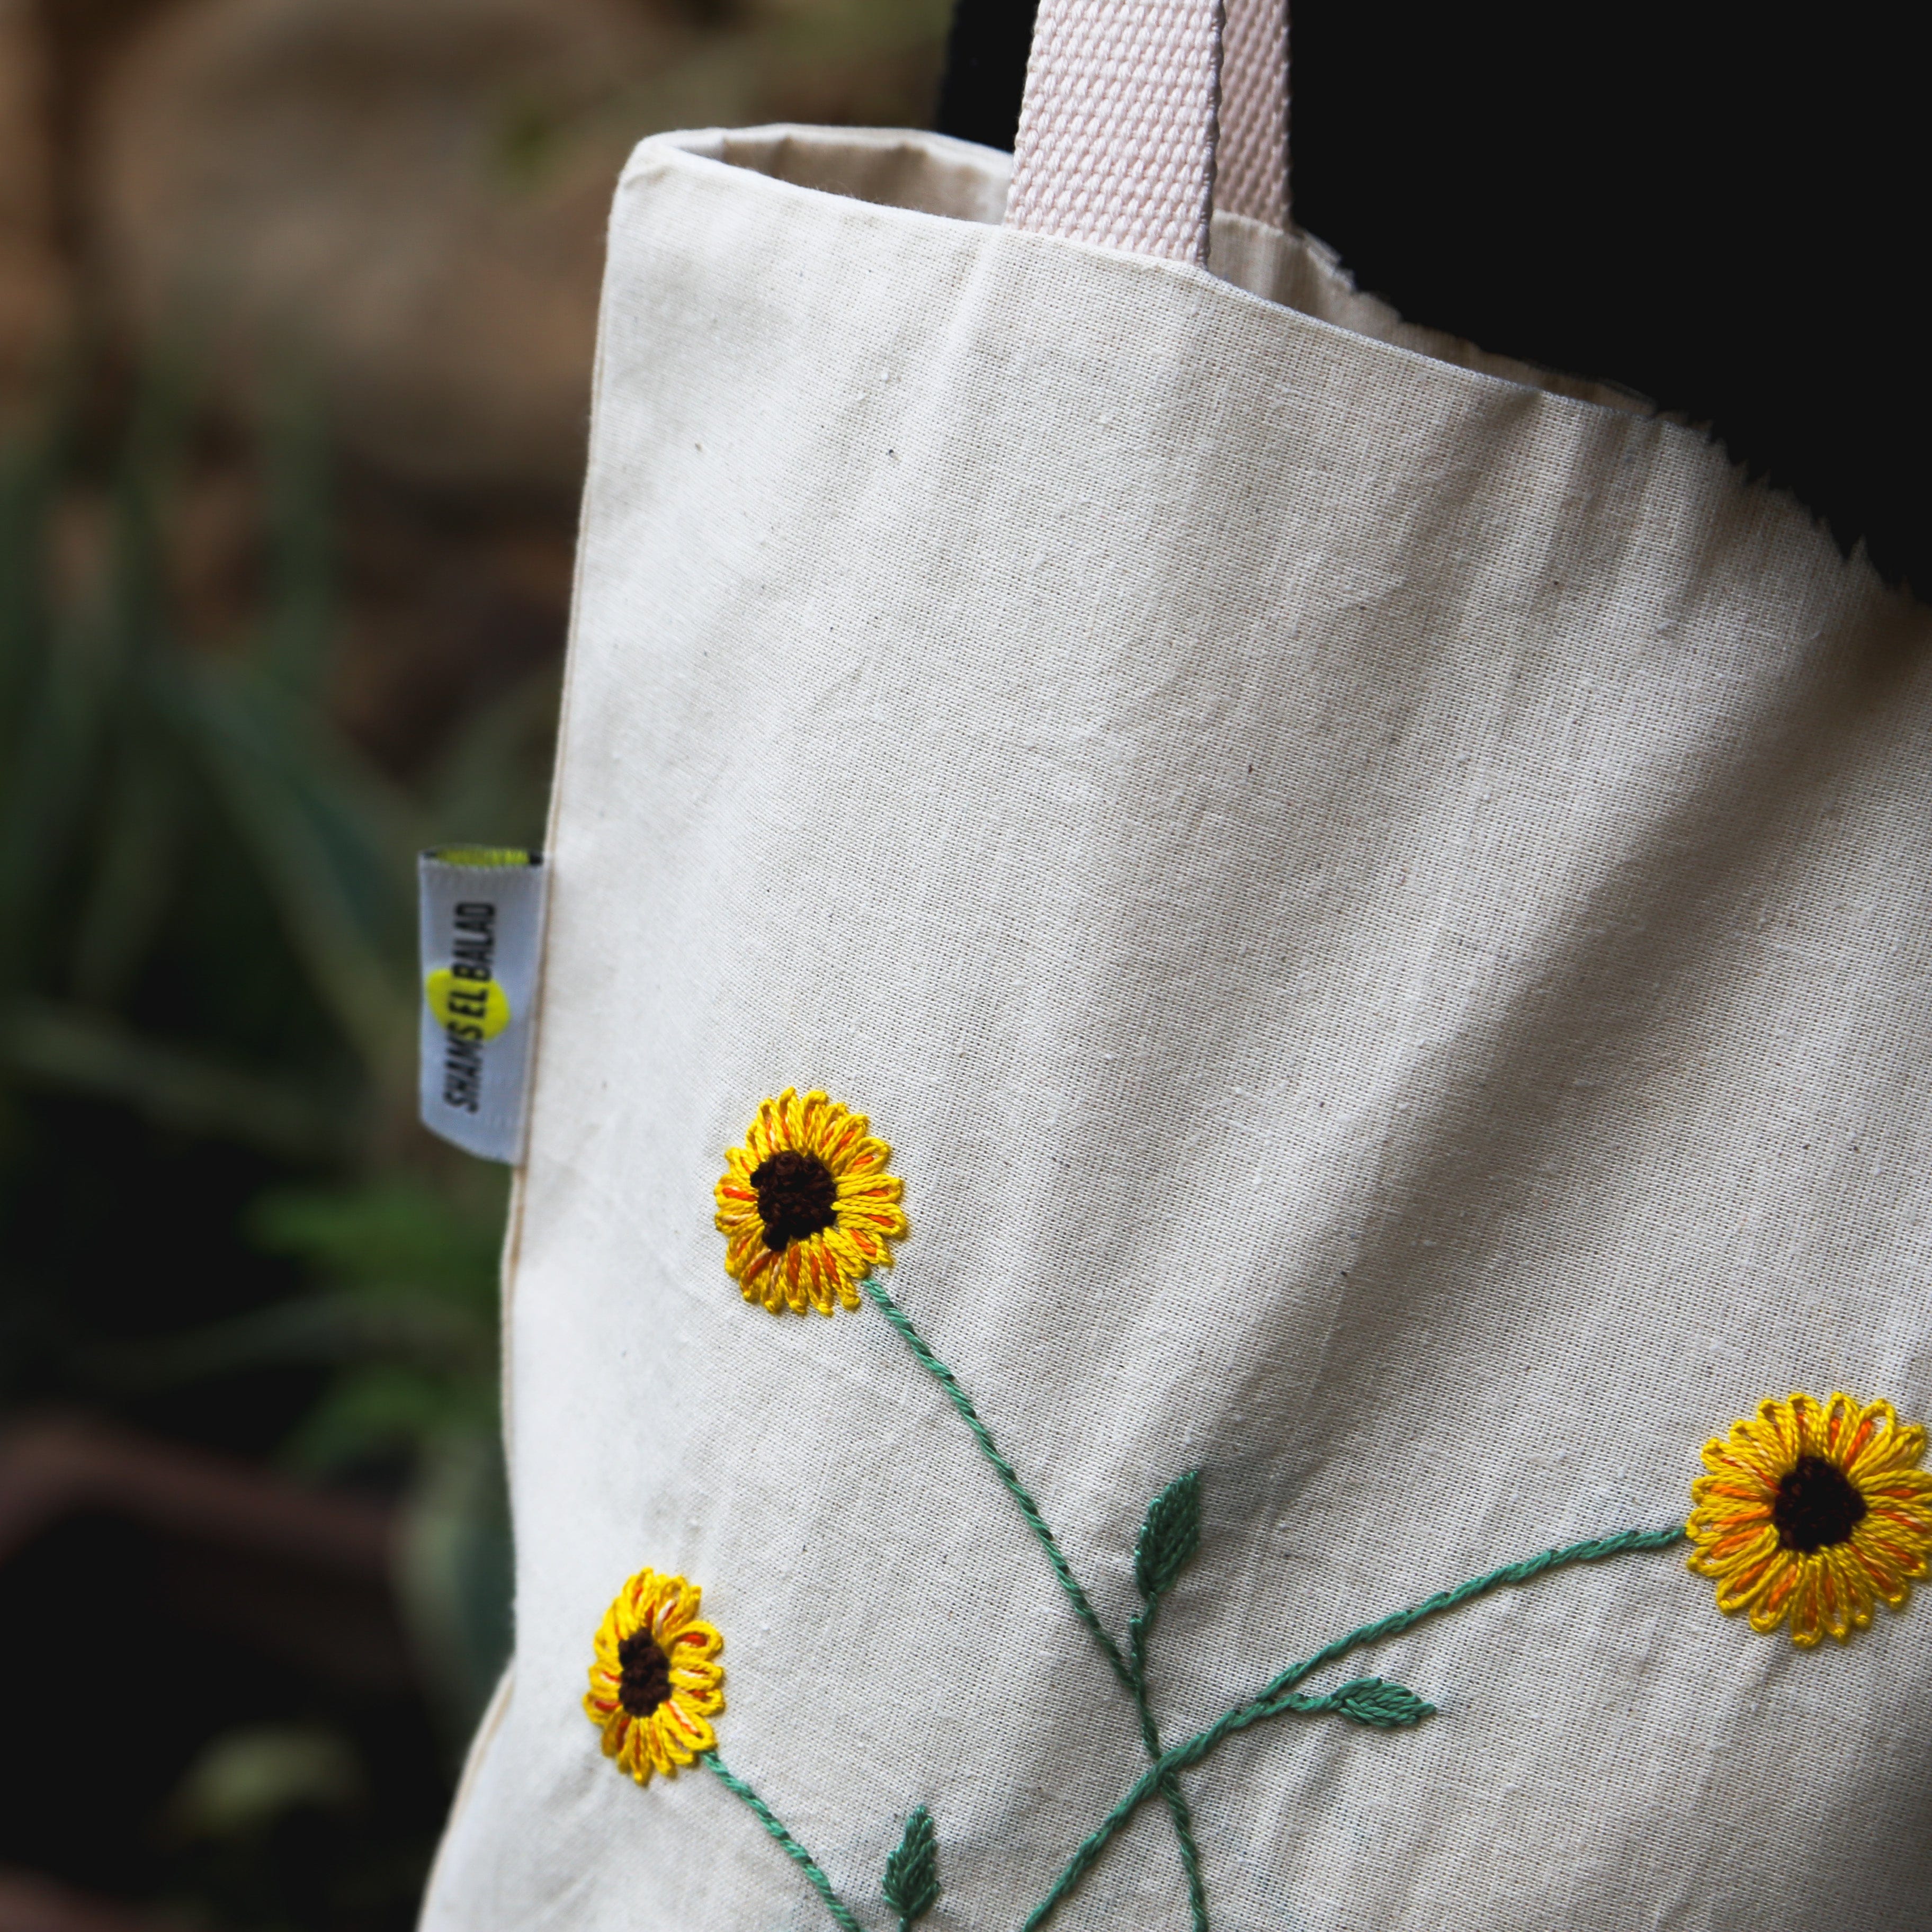 Shams El Balad Tote bag Sunflower Embroidered Tote Bag